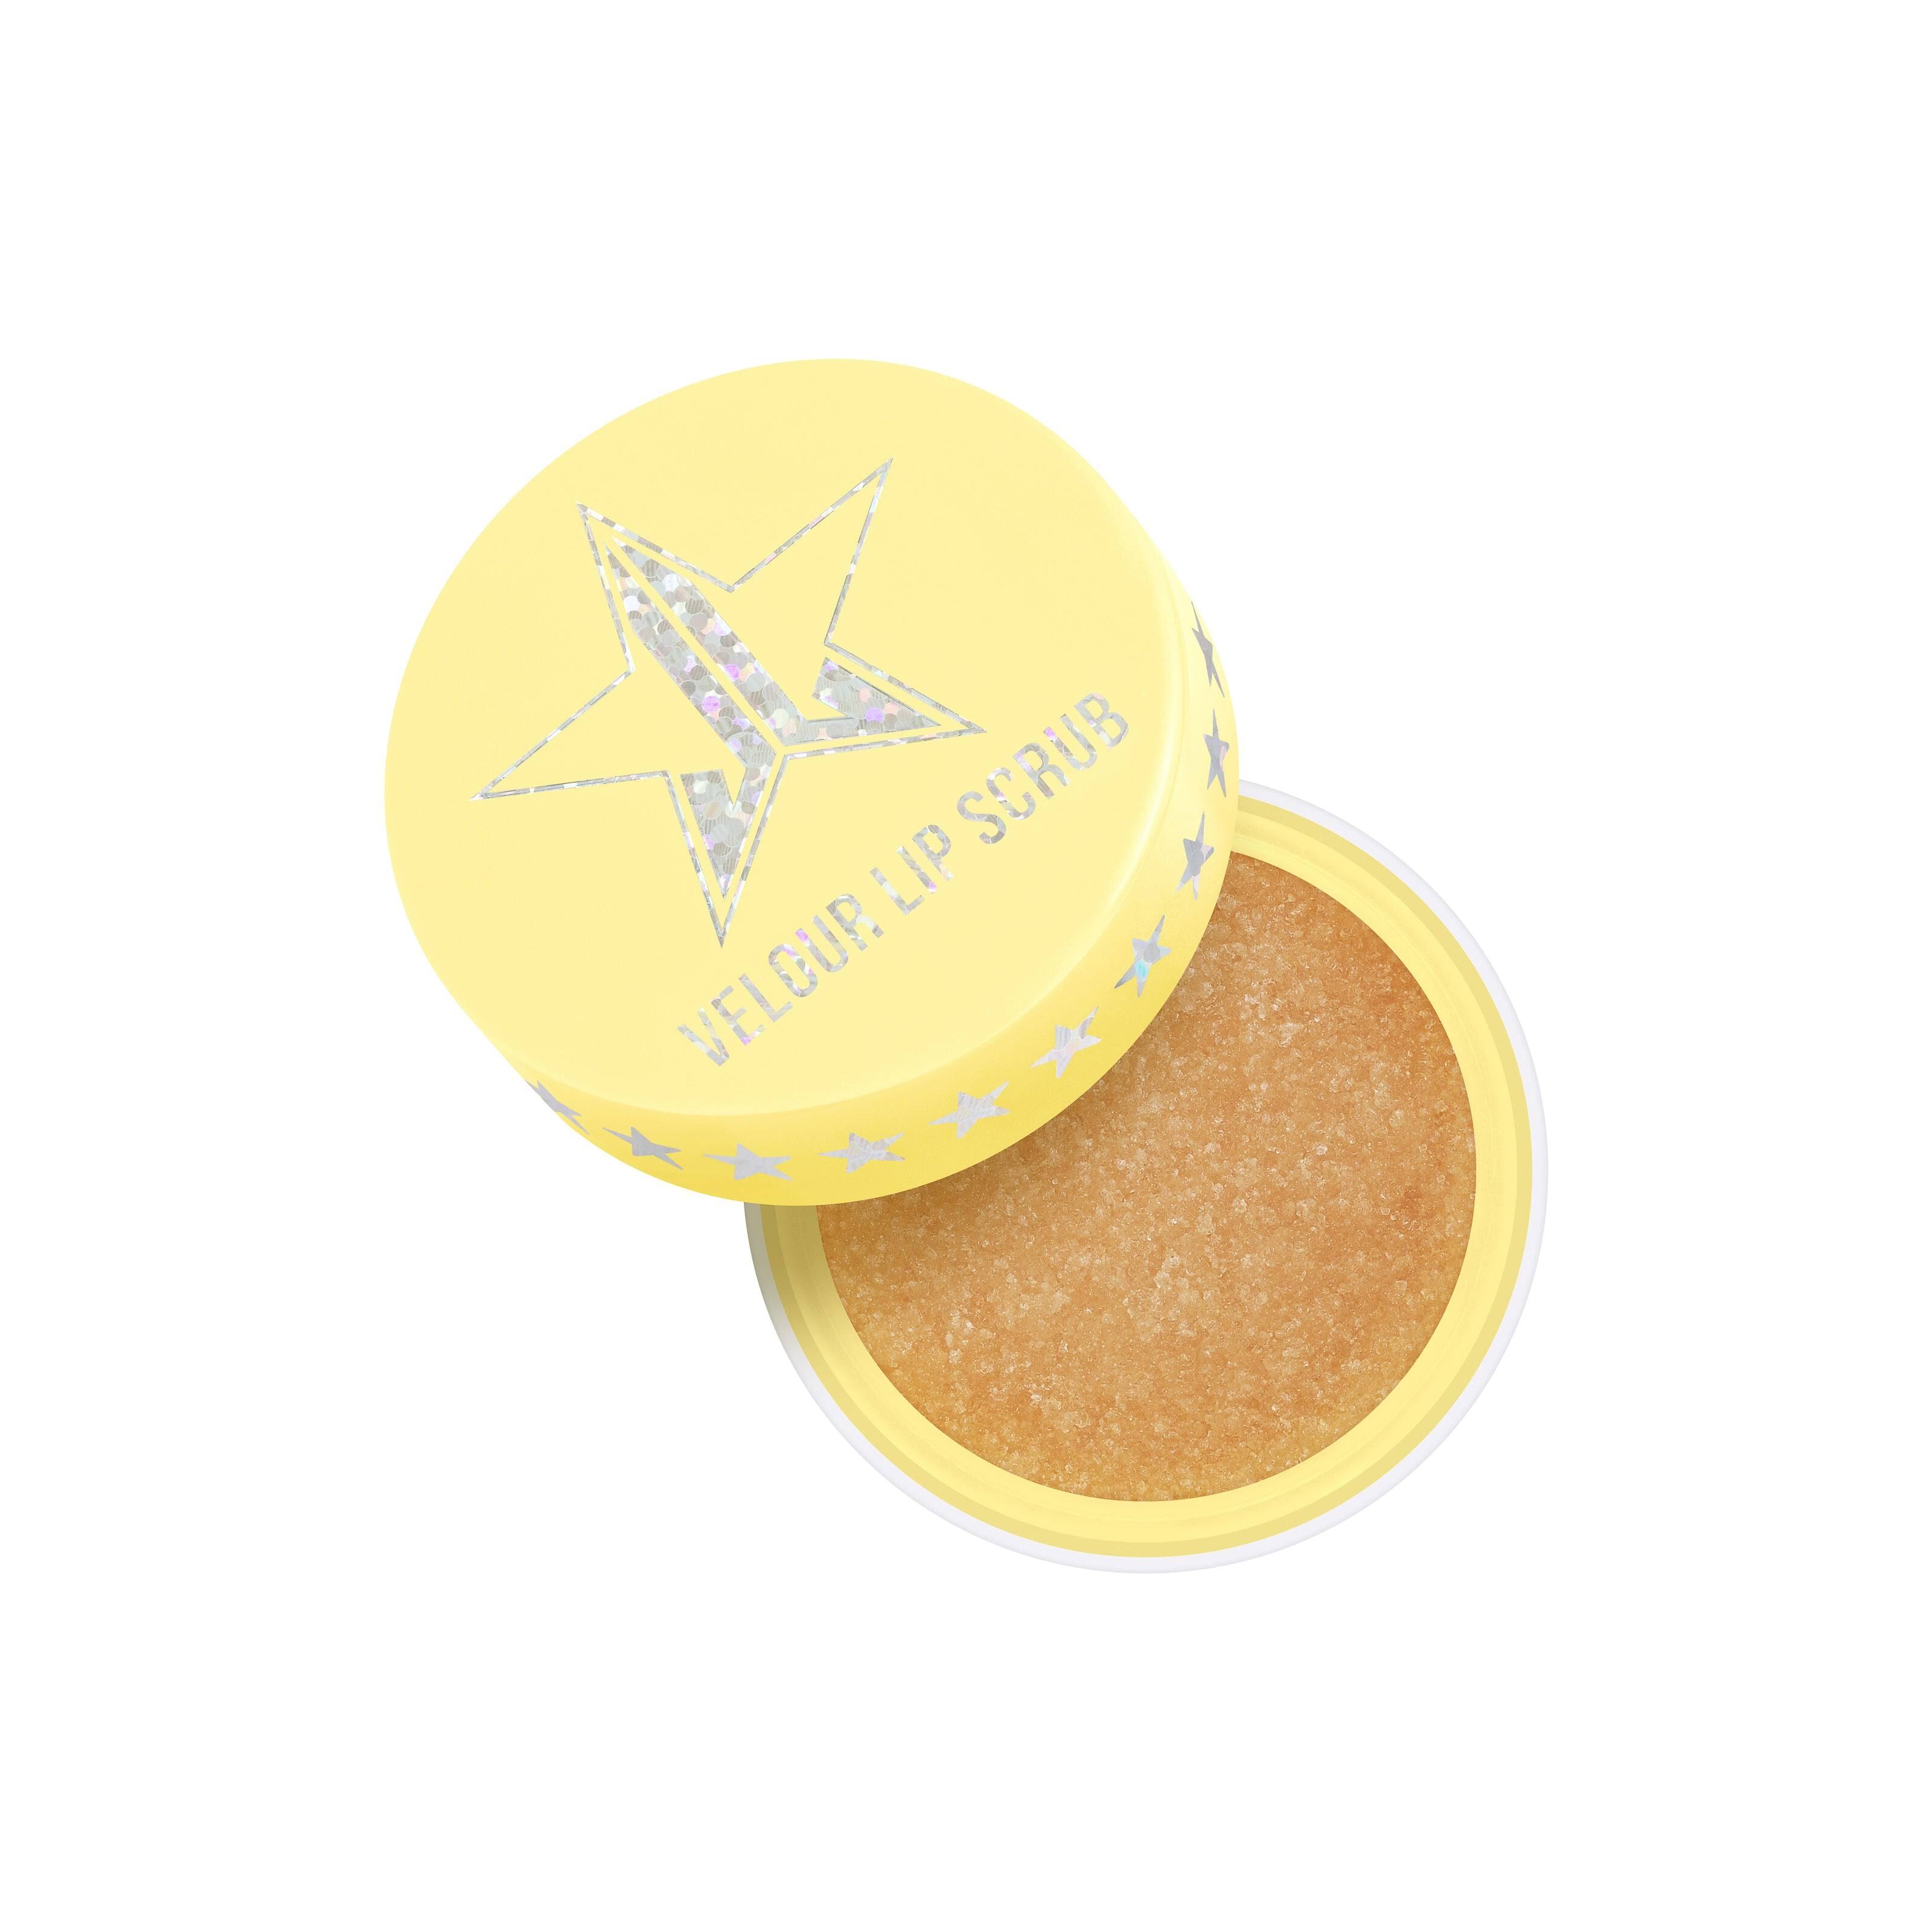 Jeffree Star Cosmetics Banana Fetish Velour Lip Scrub Banana Cream Pie